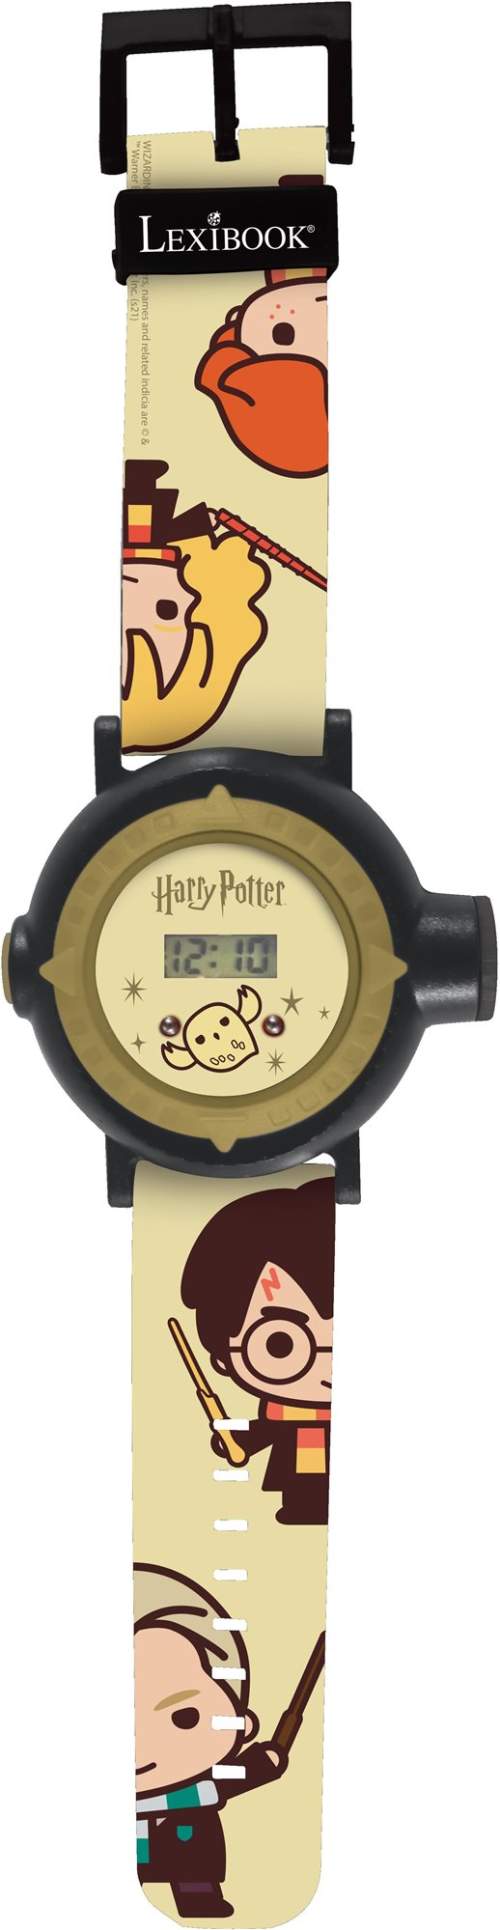 Lexibook Digitální promítací hodinky Harry Potter s 20 obrázky